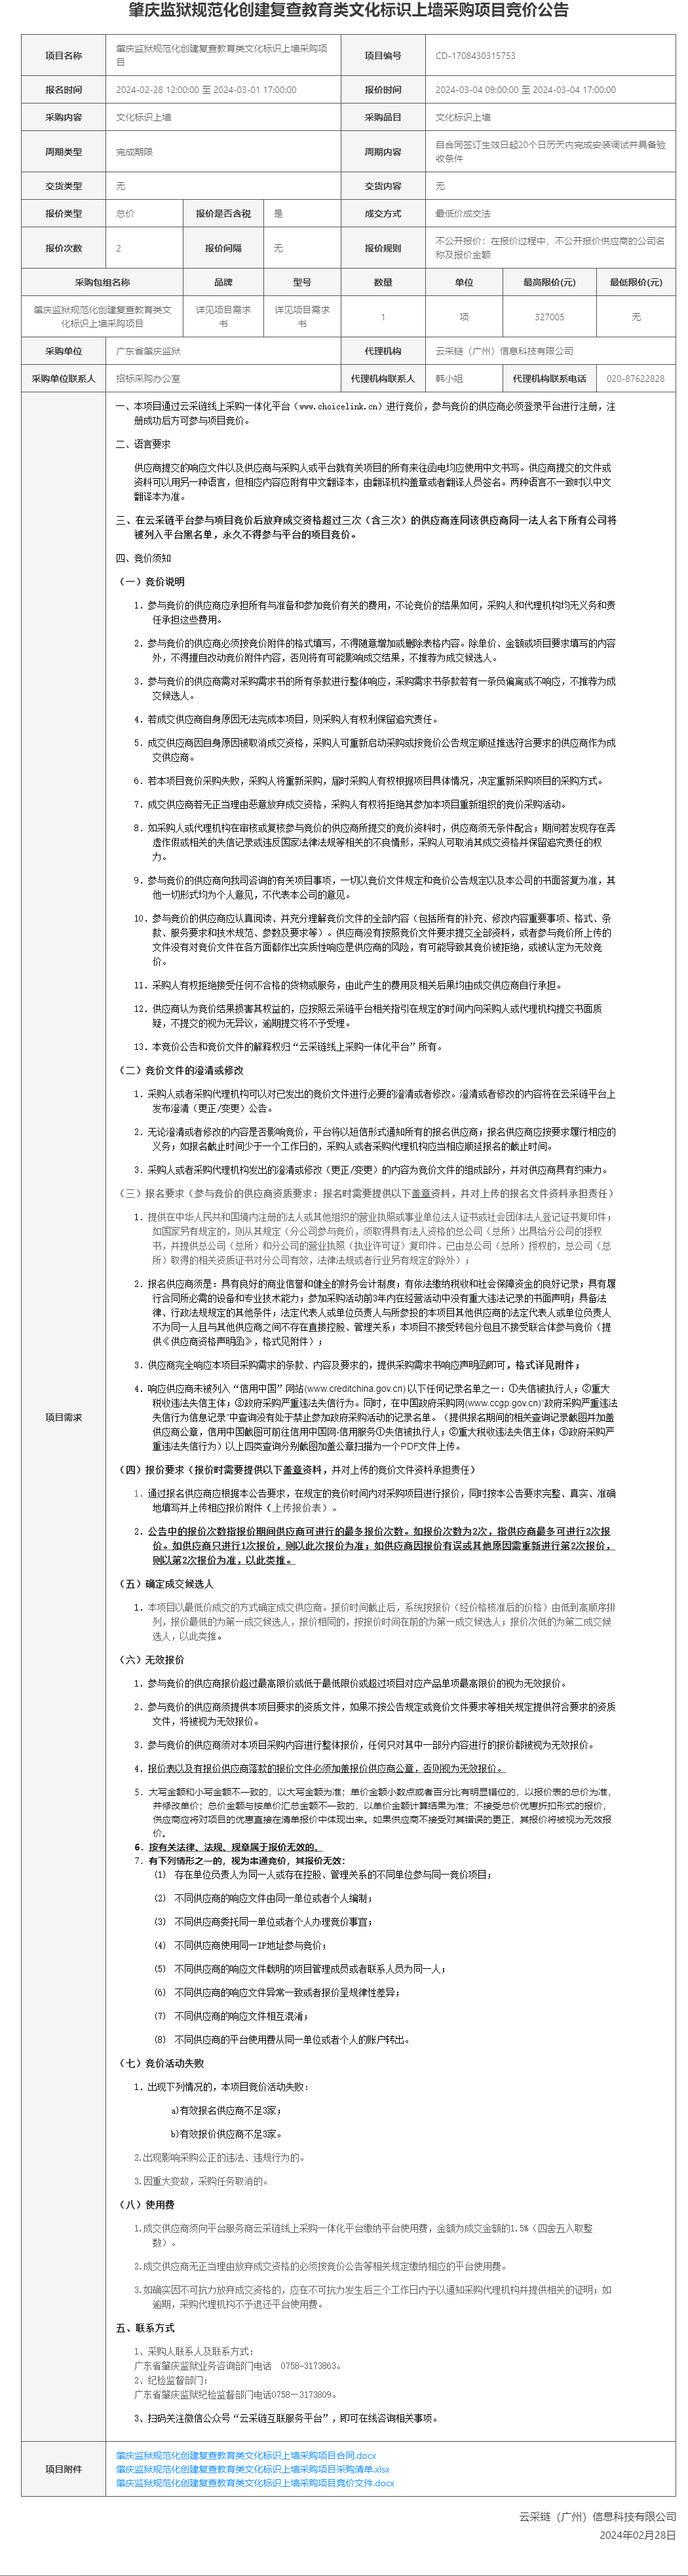 肇庆监狱规范化创建复查教育类文化标识上墙采购项目竞价公告.png